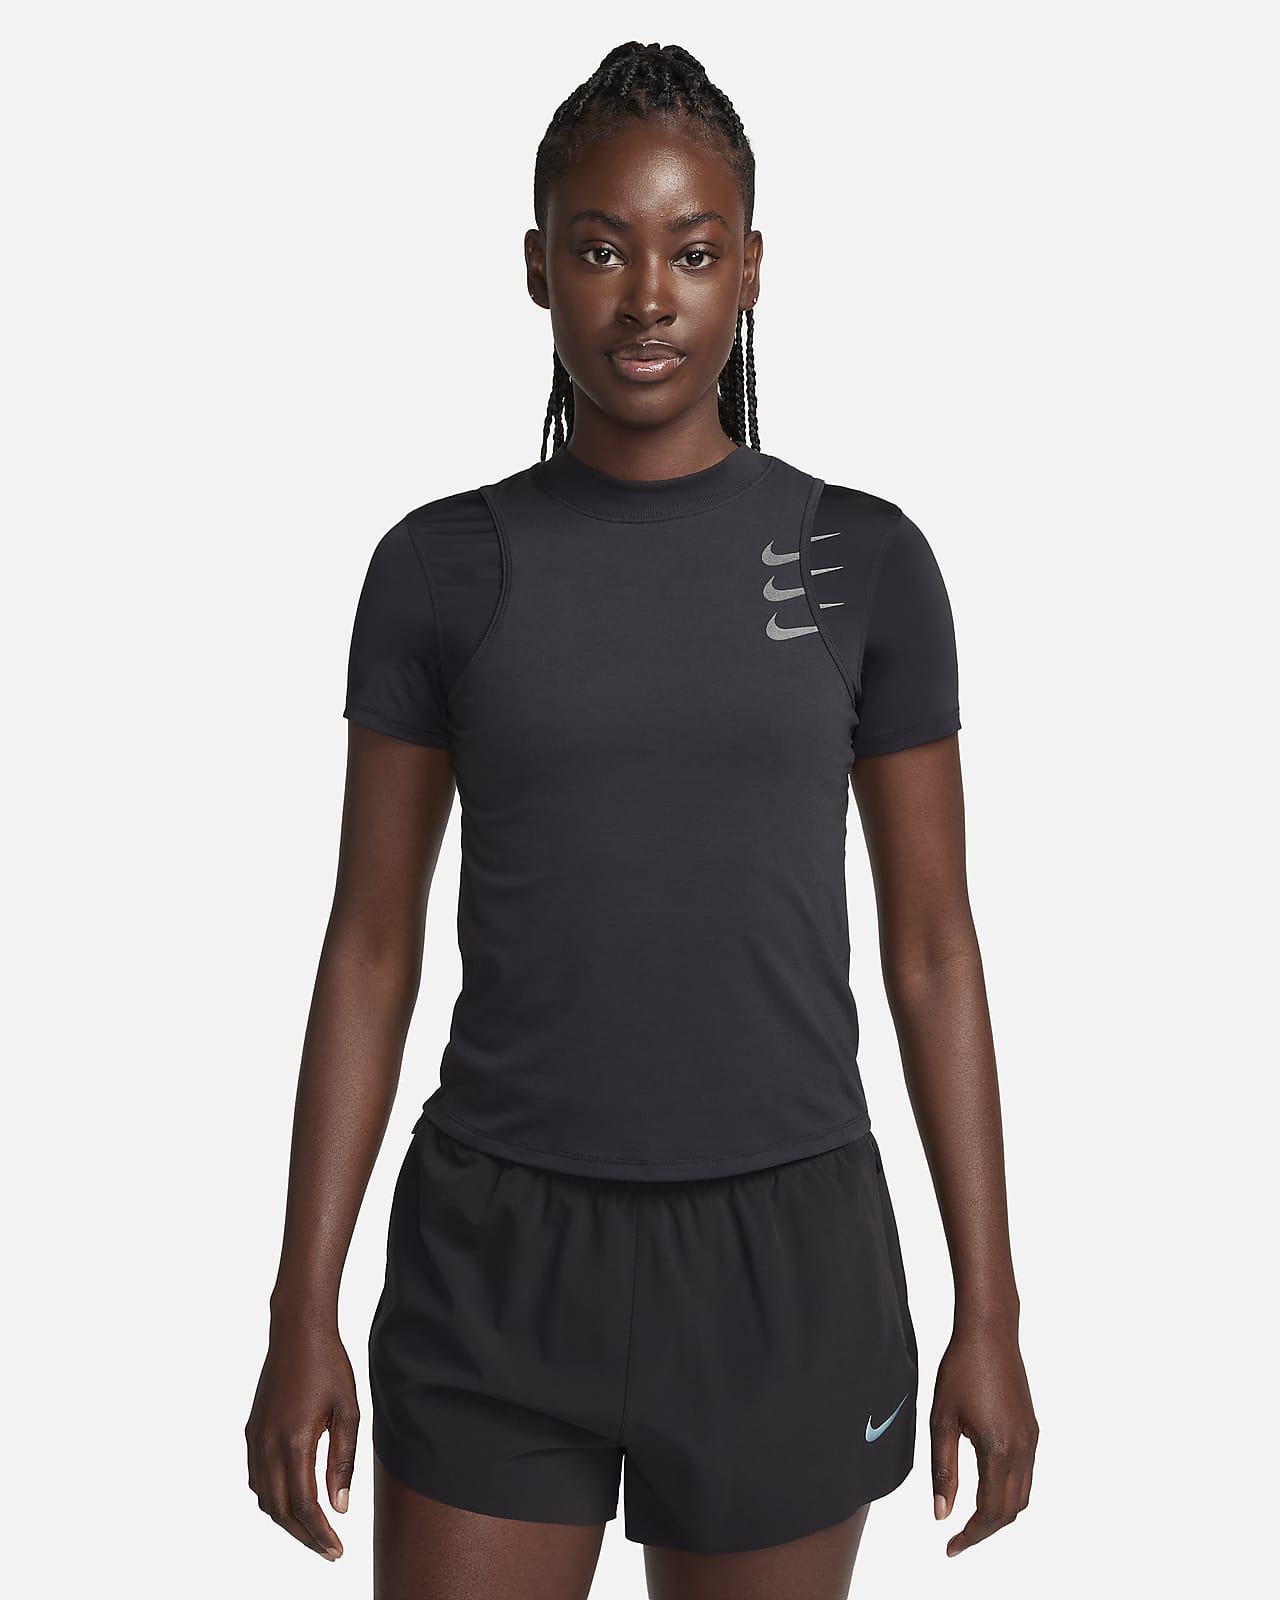 €0 - €50 Slim Training & Gym Tops & T-Shirts. Nike LU